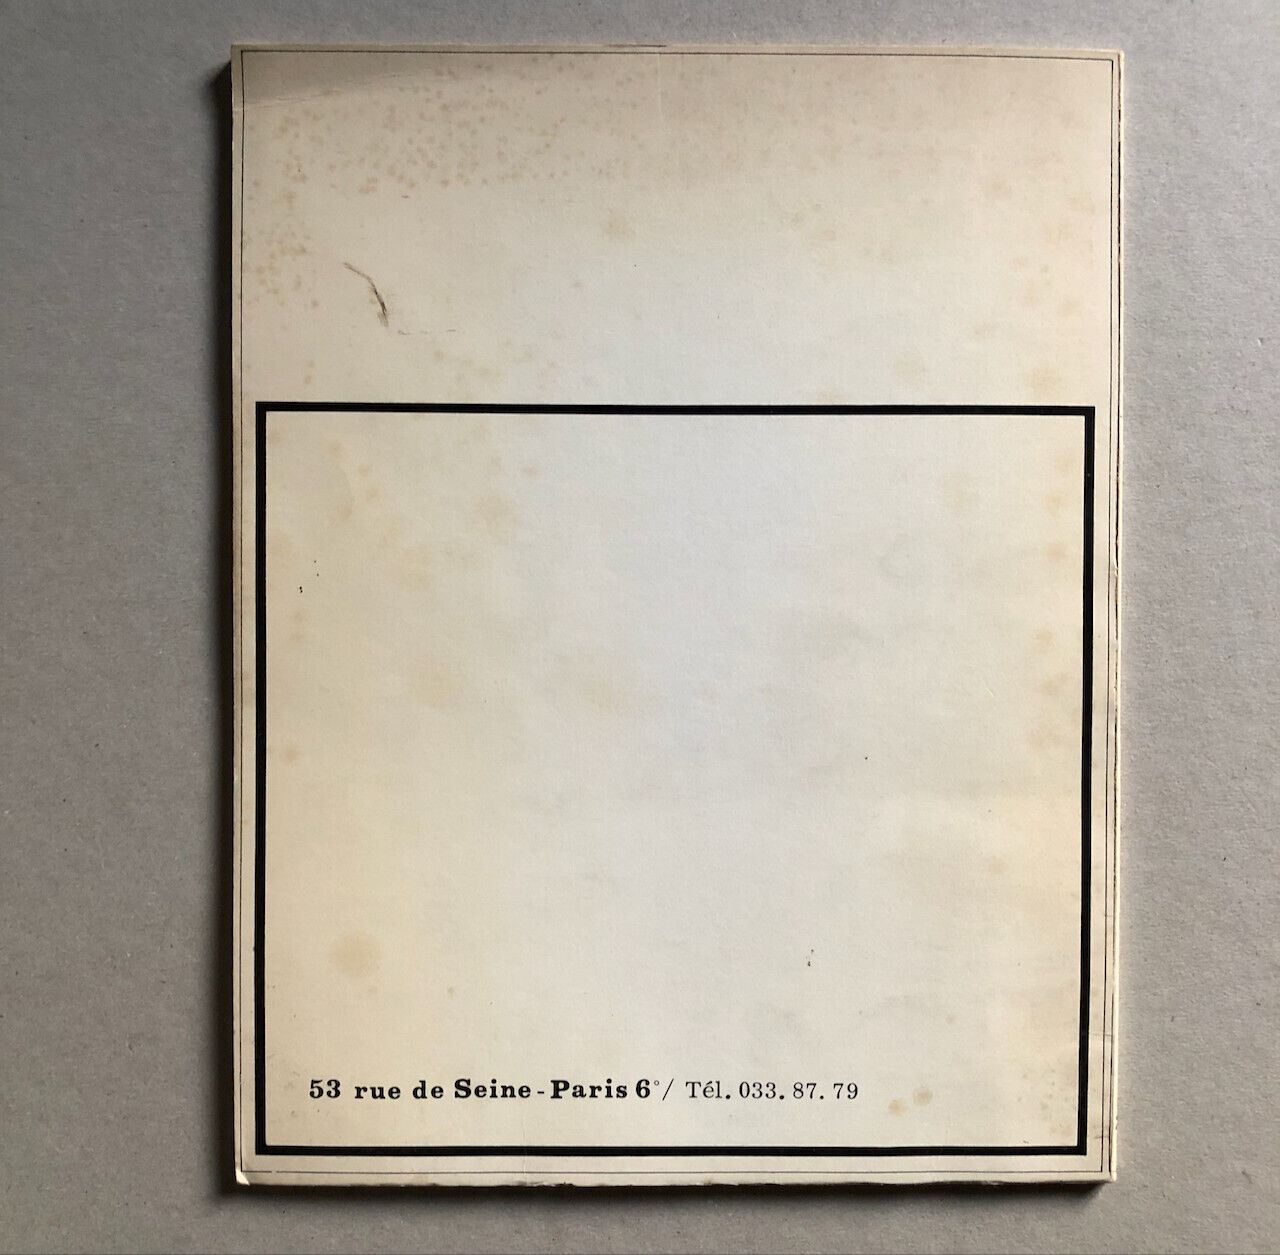 Jean Guiart — Fleuve Sepik Nouvelle Guinée  Lettre manuscrite — Kerchache — 1967